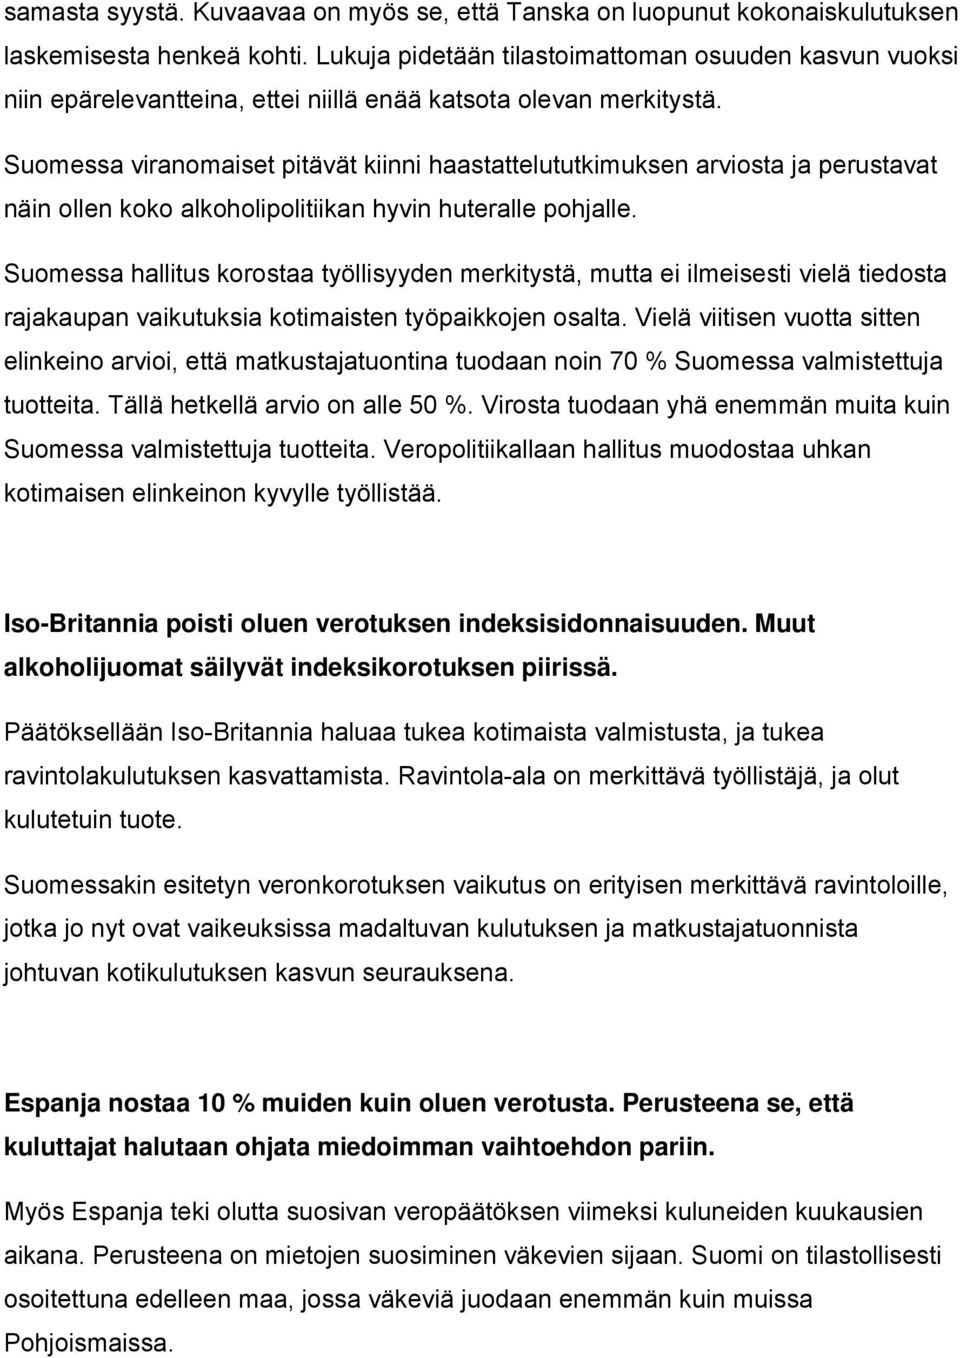 Suomessa viranomaiset pitävät kiinni haastattelututkimuksen arviosta ja perustavat näin ollen koko alkoholipolitiikan hyvin huteralle pohjalle.